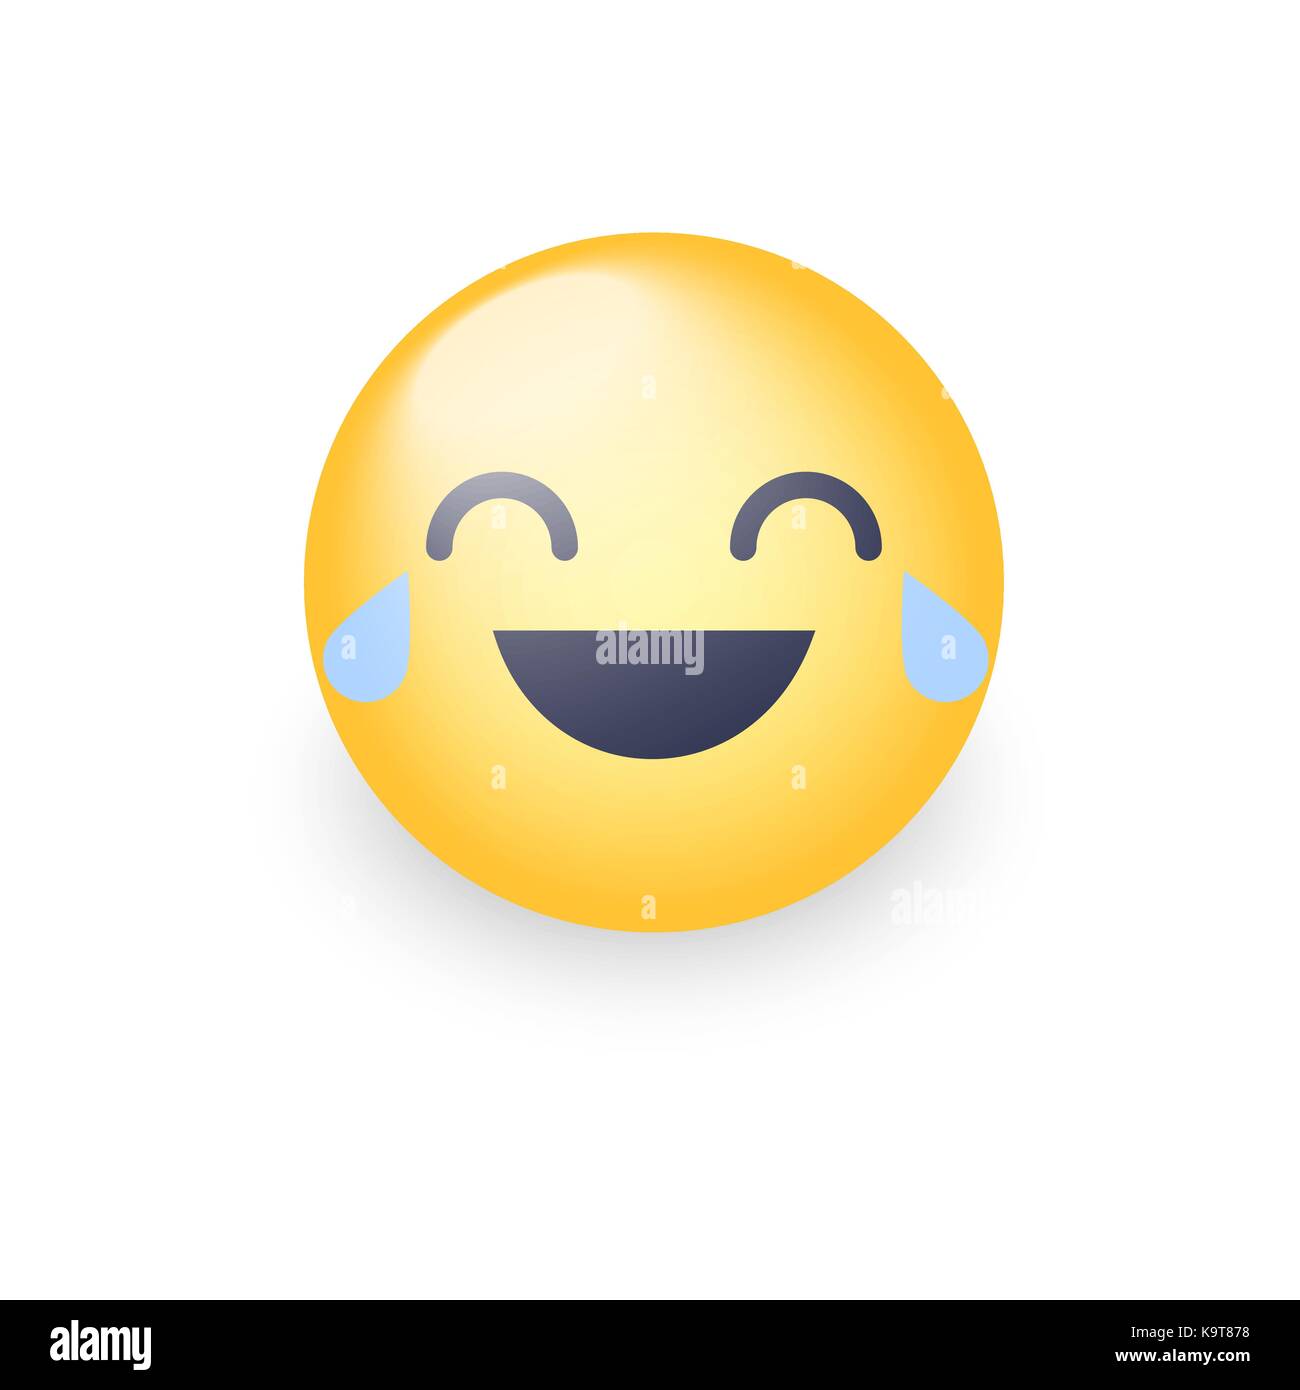 Download 95+ Gambar Emoji Salam Terbaik 